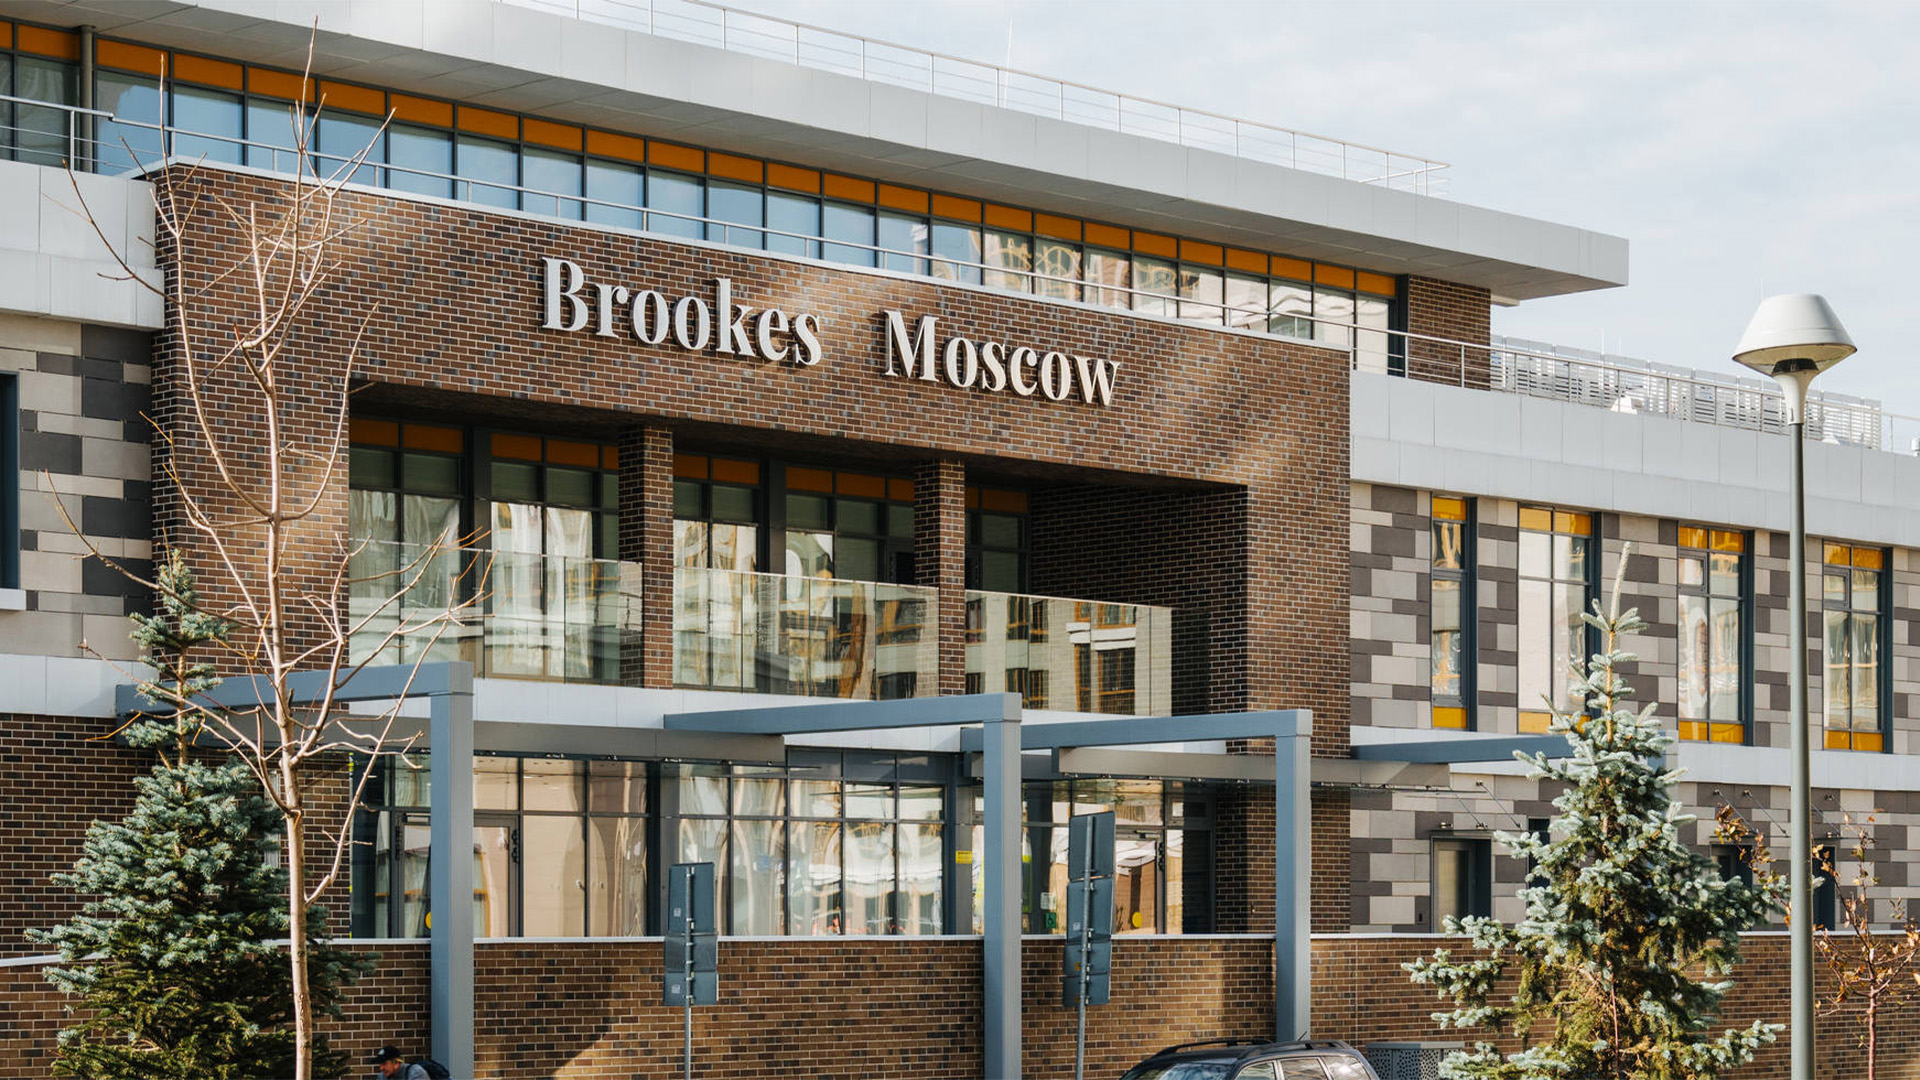 В 2018 году в квартале открылась инновационная международная школа Brookes Moscow.